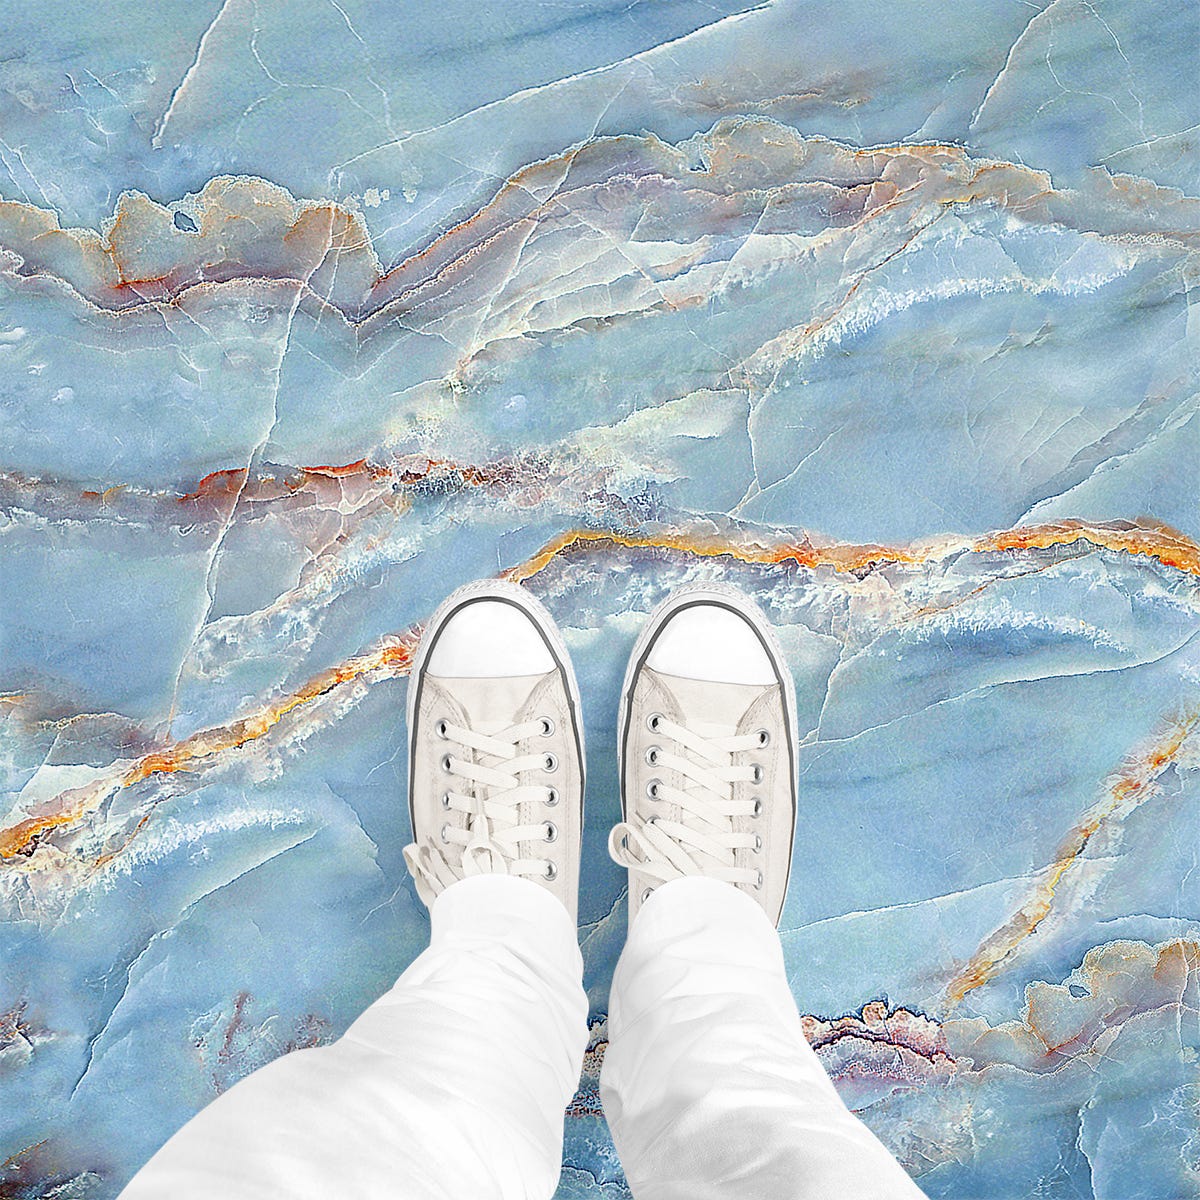 Vinilo suelo baldosas antideslizante losa de mármol blanco - adhesivo de  pared - revestimiento sticker mural decorativo - 20x20cm